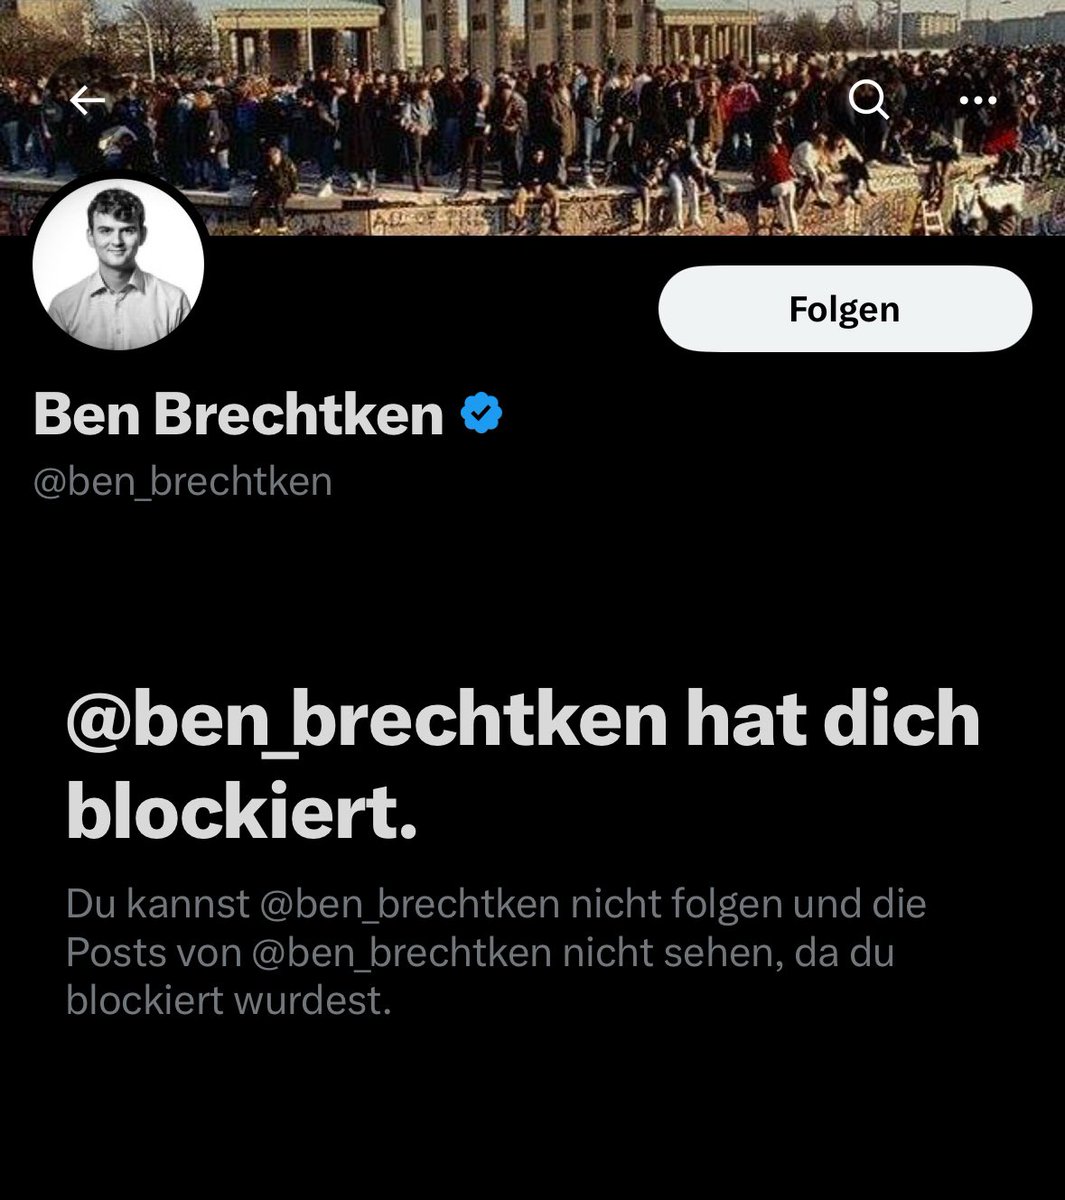 Kann mir mal jemand helfen? Warum bin ich bei @ben_brechtken blockiert? Also bisher fand ich seine Beiträge immer sehr gut und habe die gerne geteilt. Und heute sehe ich das ich blockiert bin.